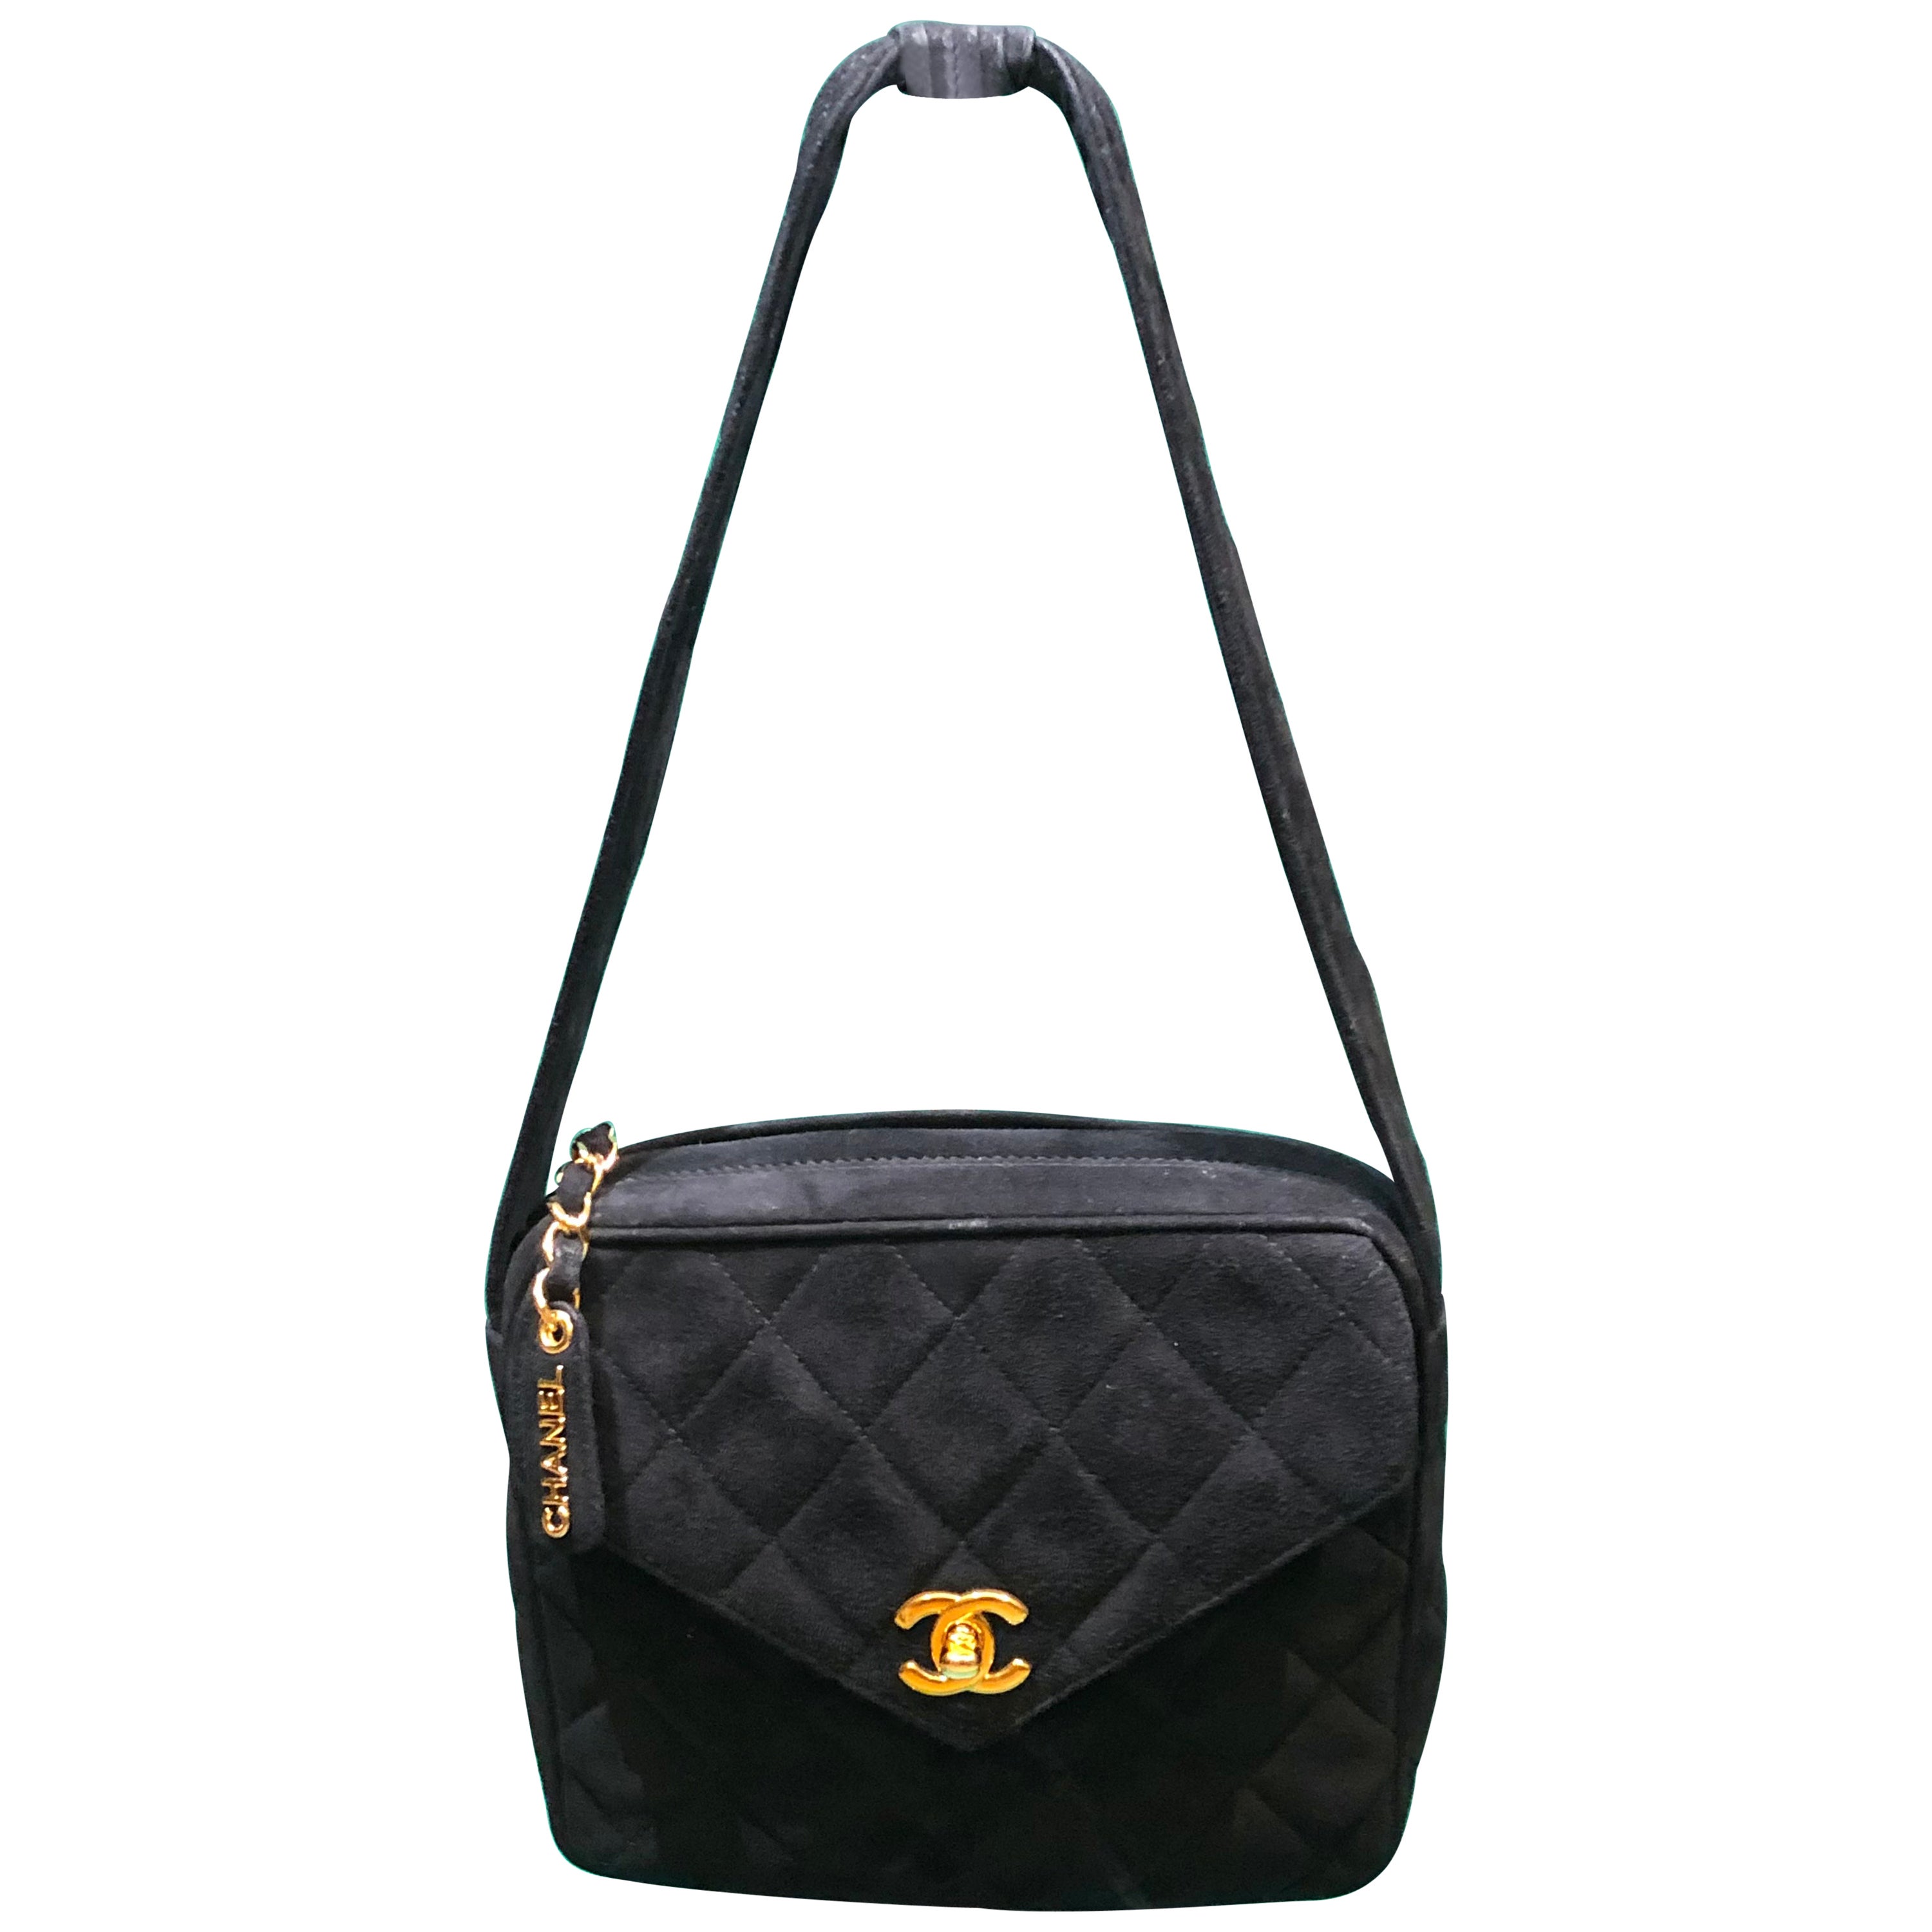 Vintage 90s Chanel Black Quilted Suede Handle Handbag 